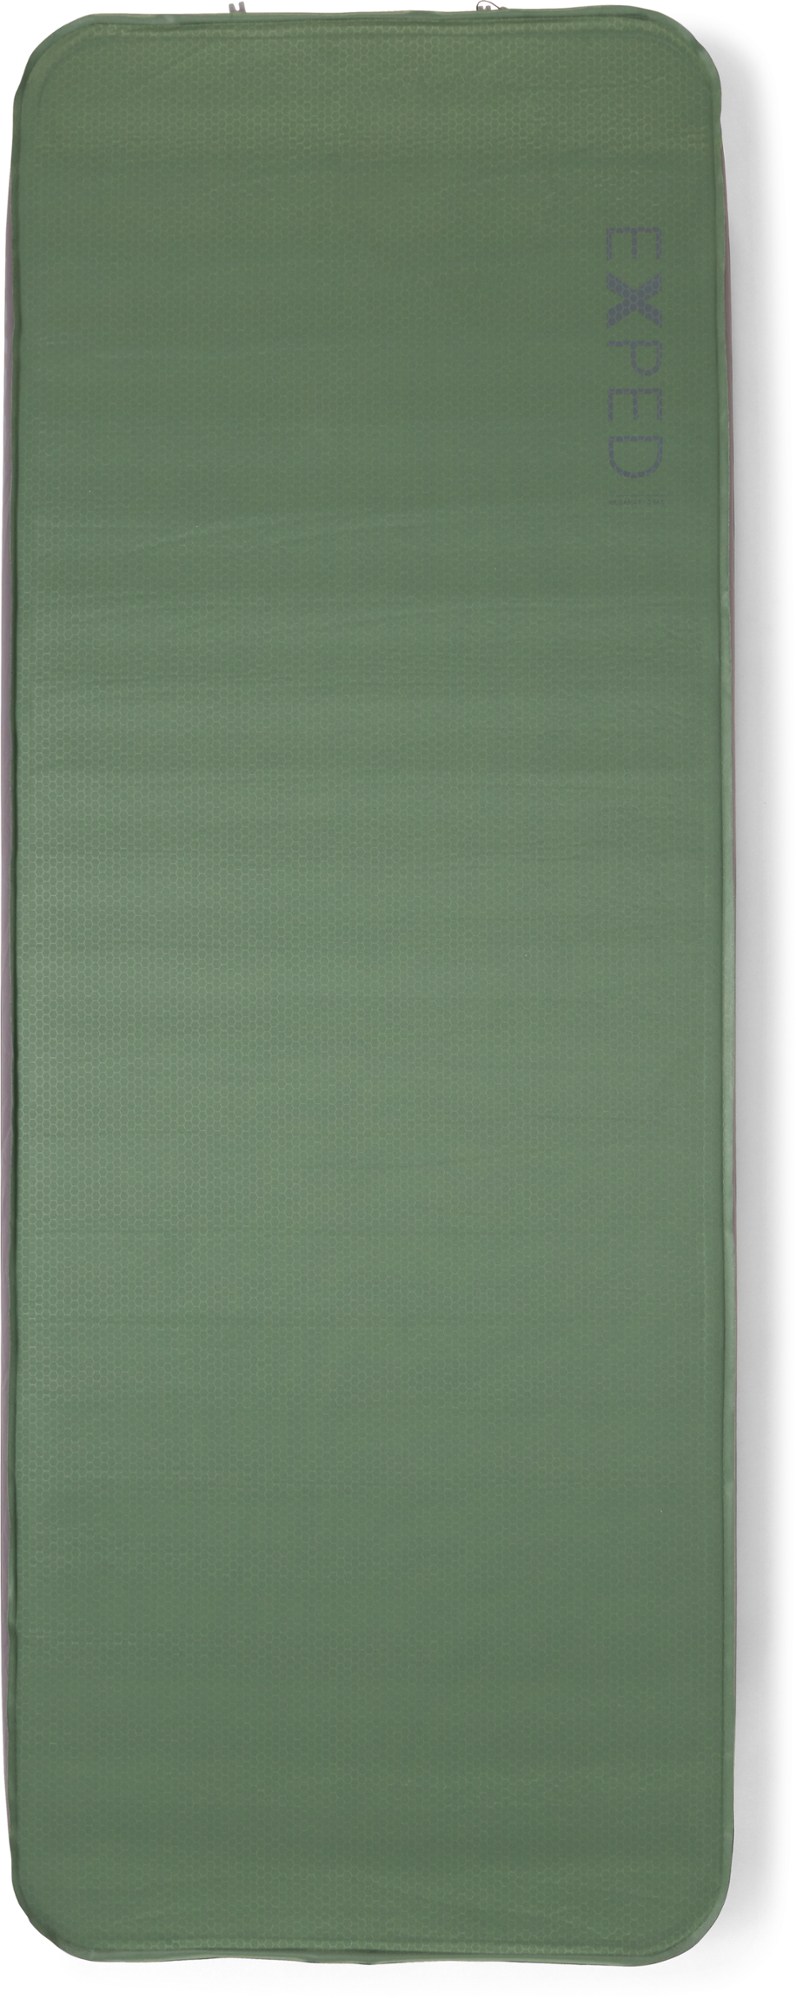 МегаМат 10 Спальный коврик Exped, зеленый